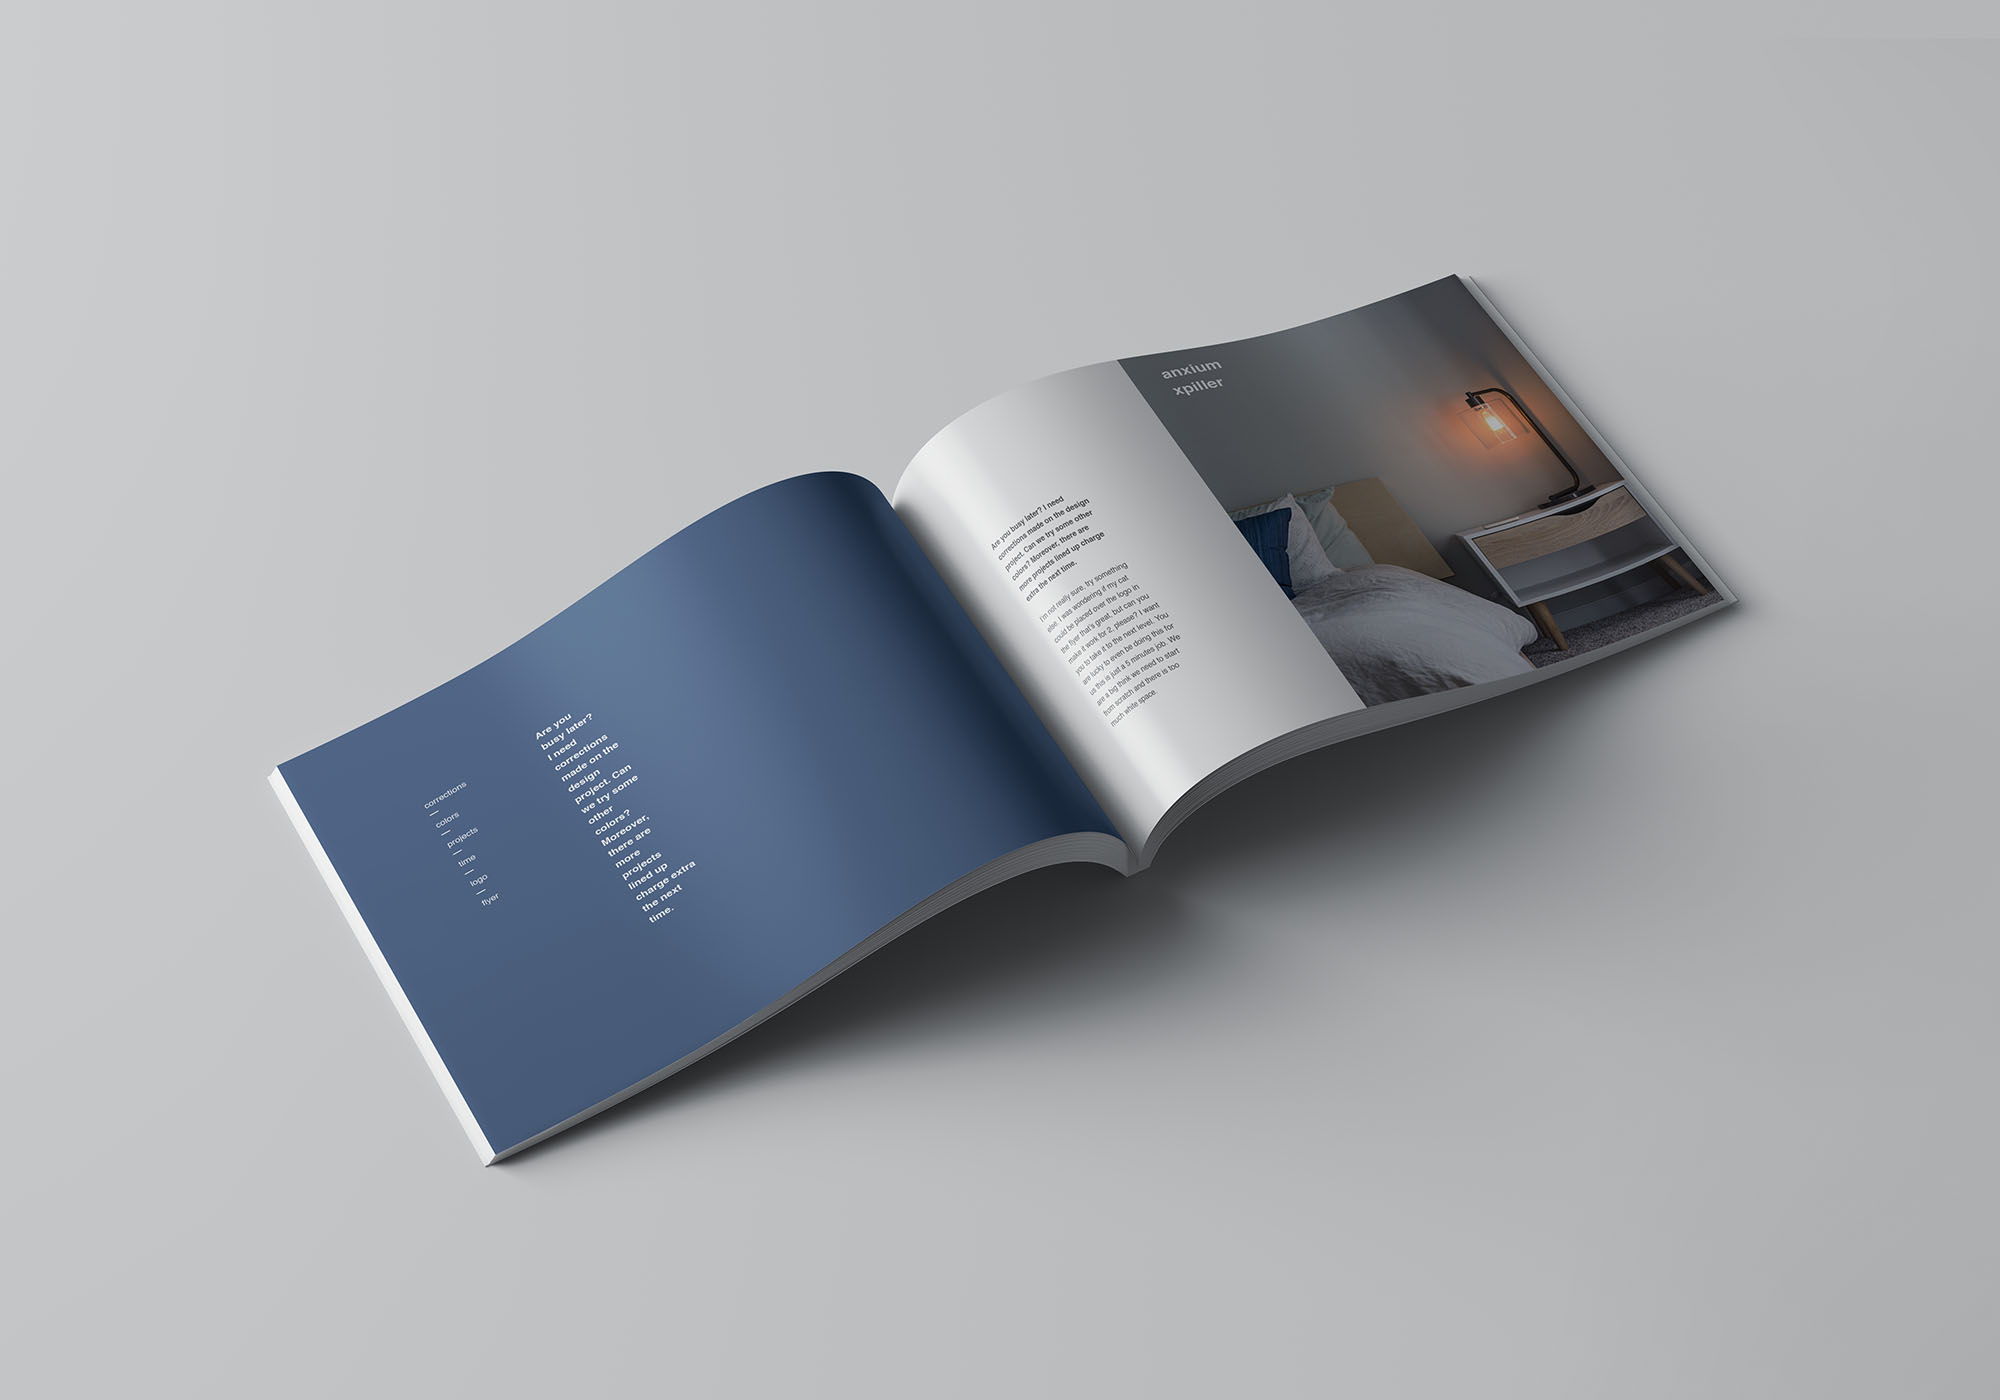 企业画册/产品手册封面&内页排版设计展示样机 A4 Landscape Perfect Binding Brochure Mockup设计素材模板